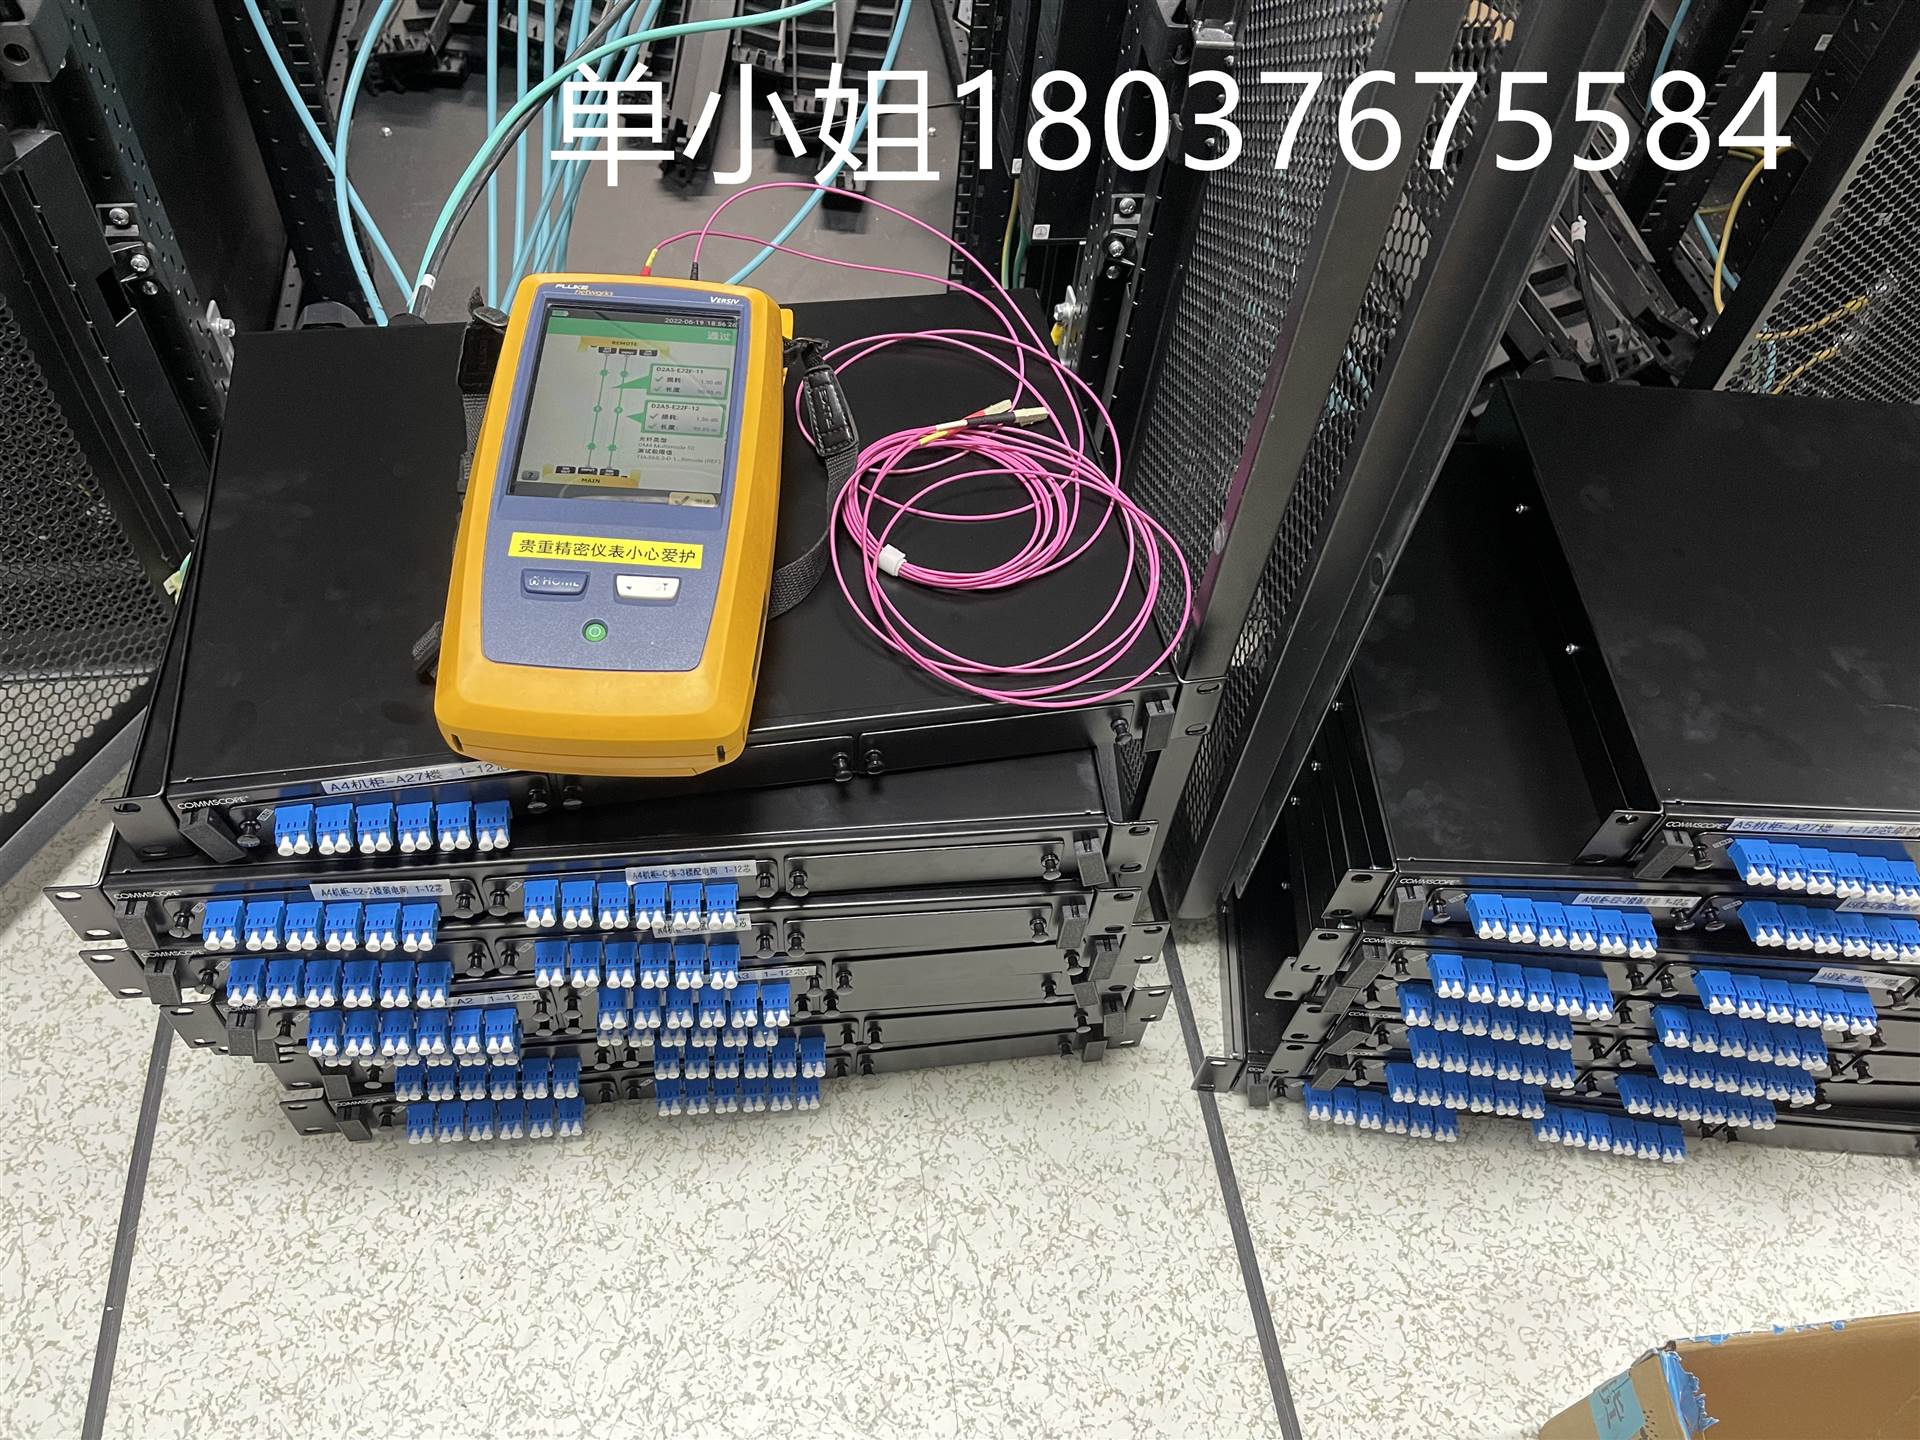 上海周边光纤熔接测试 网络故障抢修光缆熔接 通过FLUKE测试报告